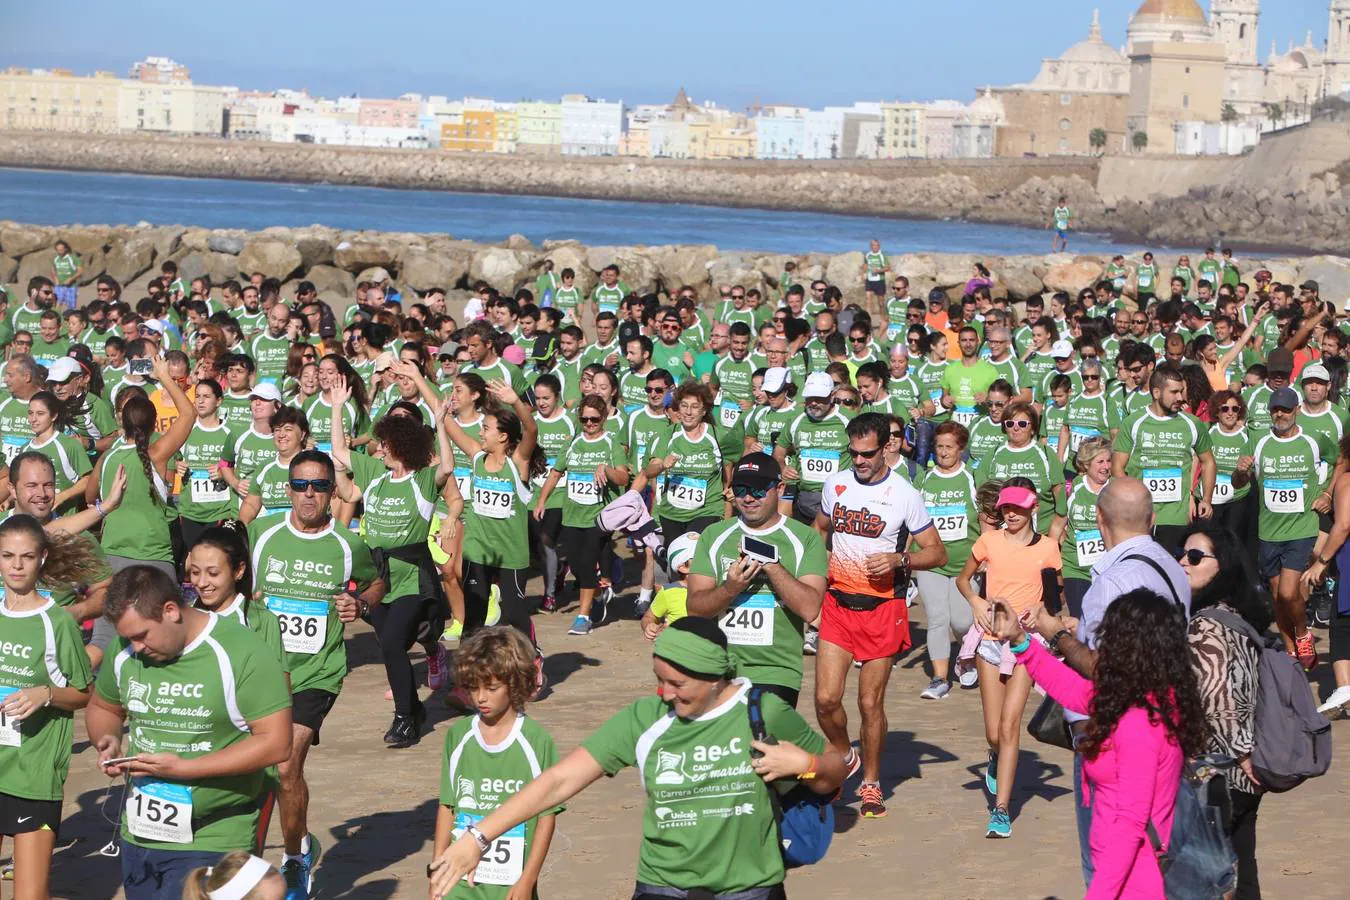 Búscate en la IV Carrera contra el cáncer de Cádiz (I)